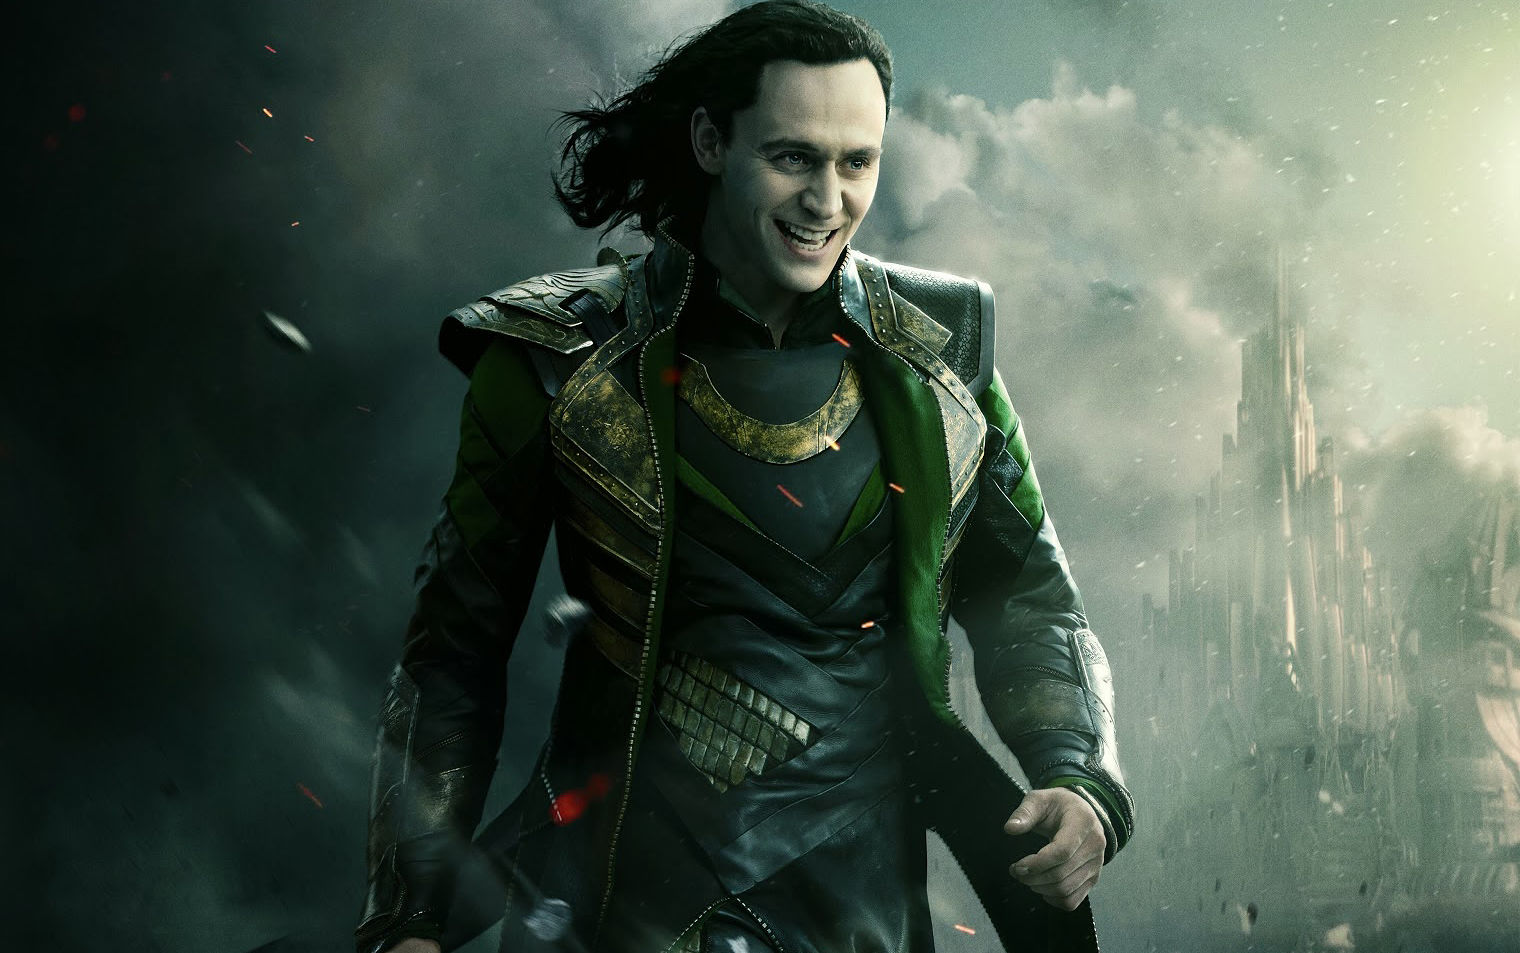 Loki #5